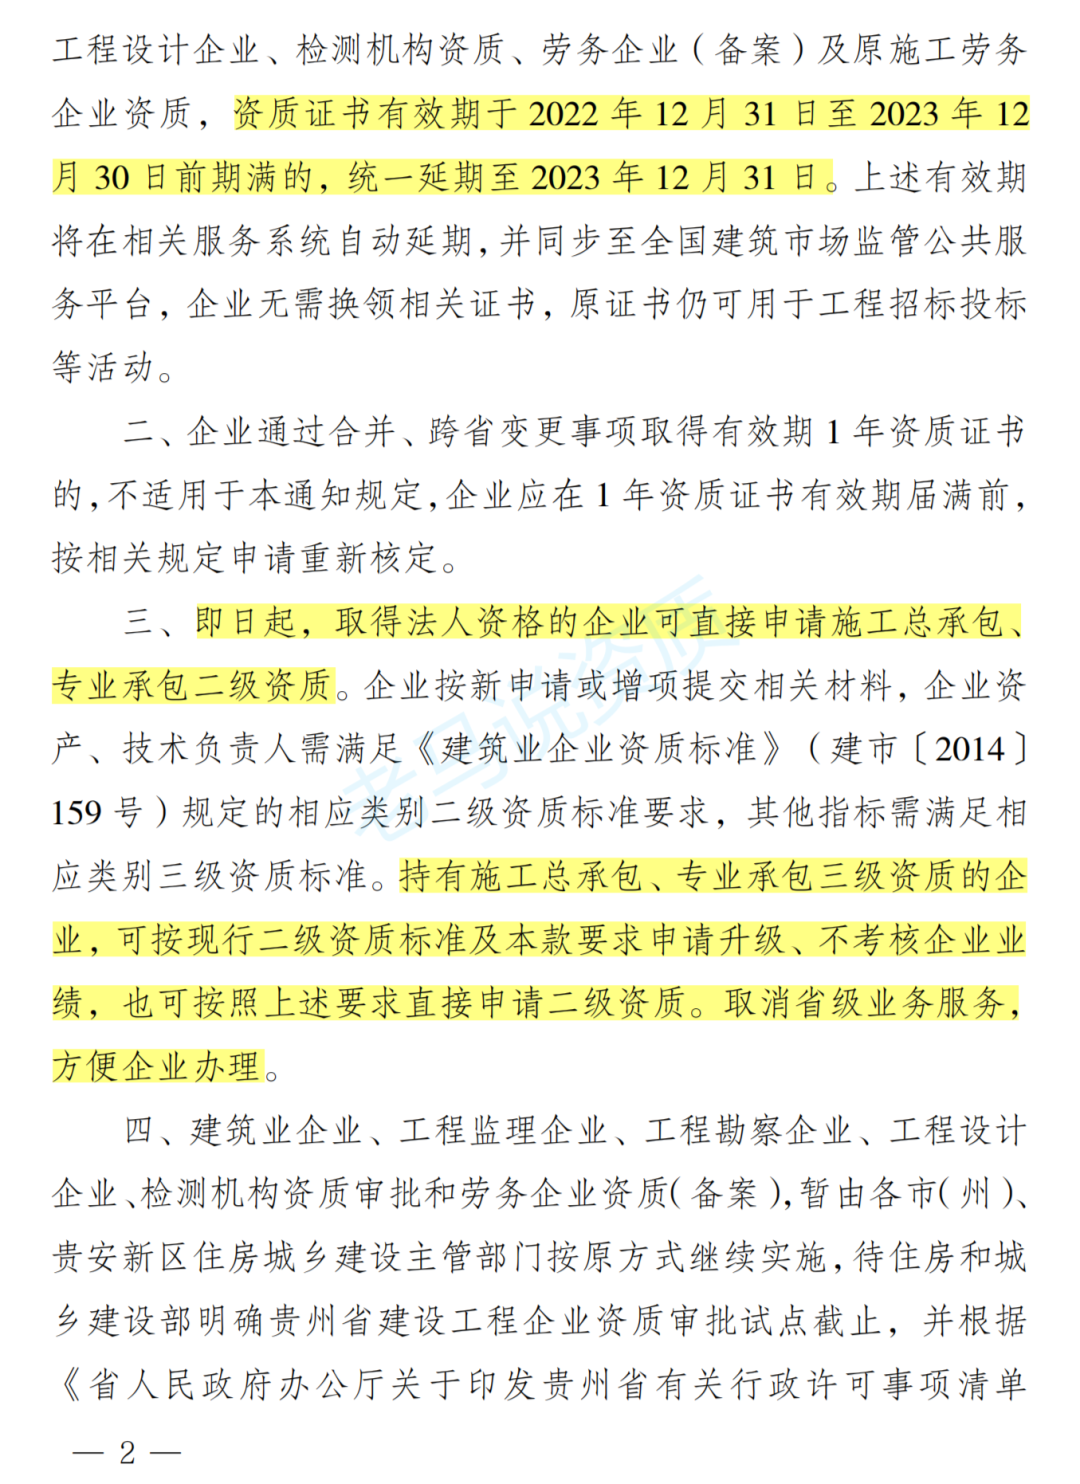 贵州按现有标准三级升二级可以不考核企业业绩，江西省也即将开放